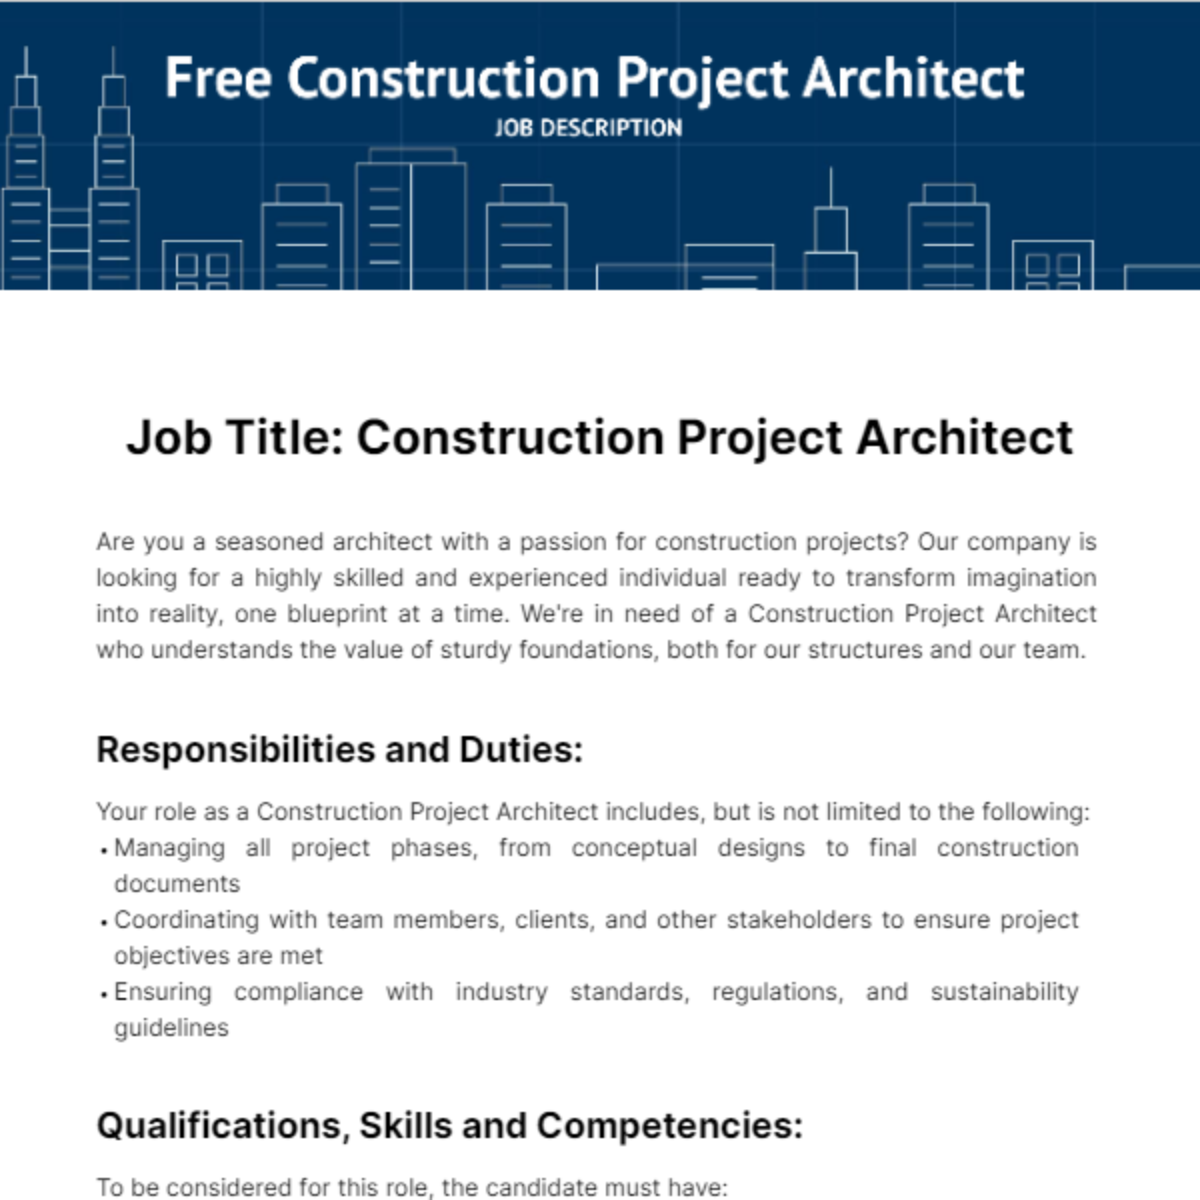 Free Construction Project Architect Job Description Template